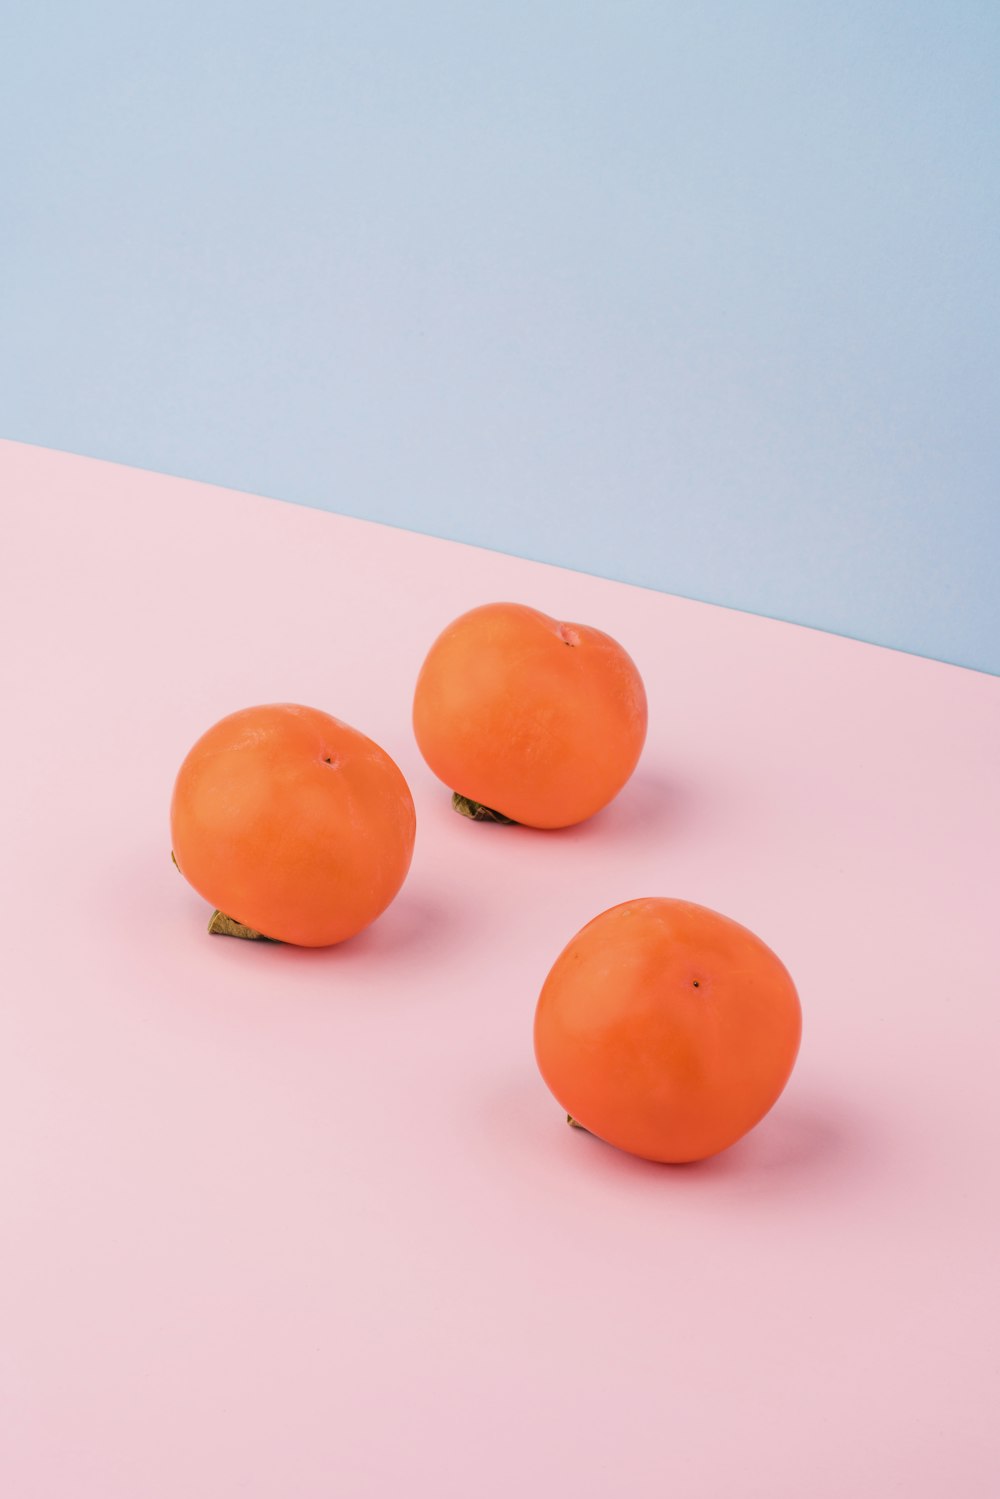 tre frutti arancioni su superficie rosa